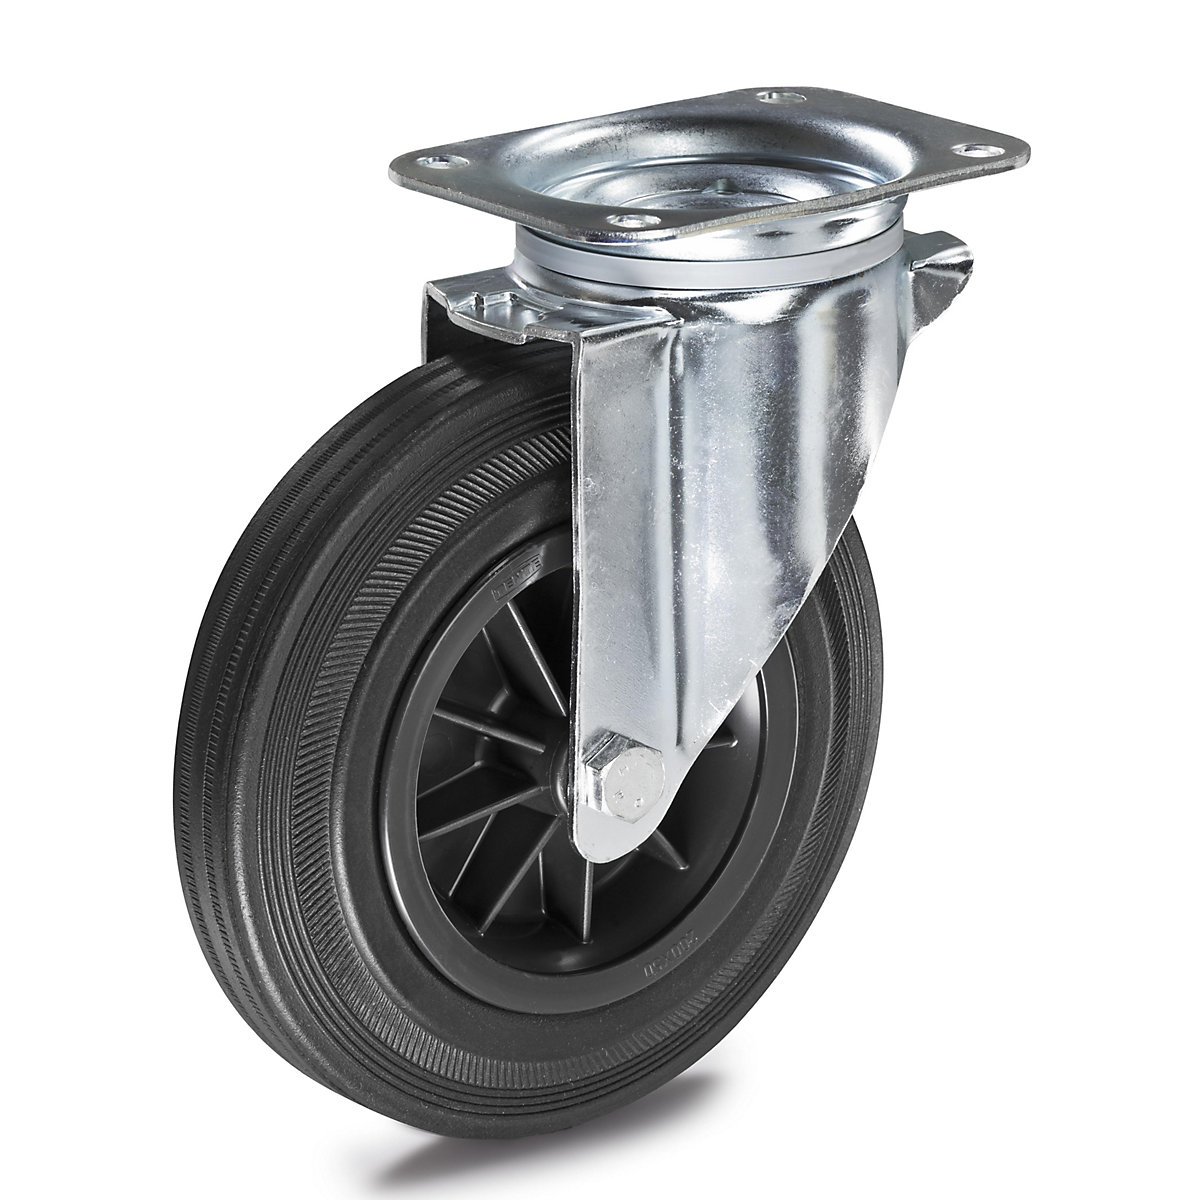 Celogumová obruč na plastovom disku – Proroll, Ø x šírka kolesa 125 x 38 mm, otočné koliesko-5